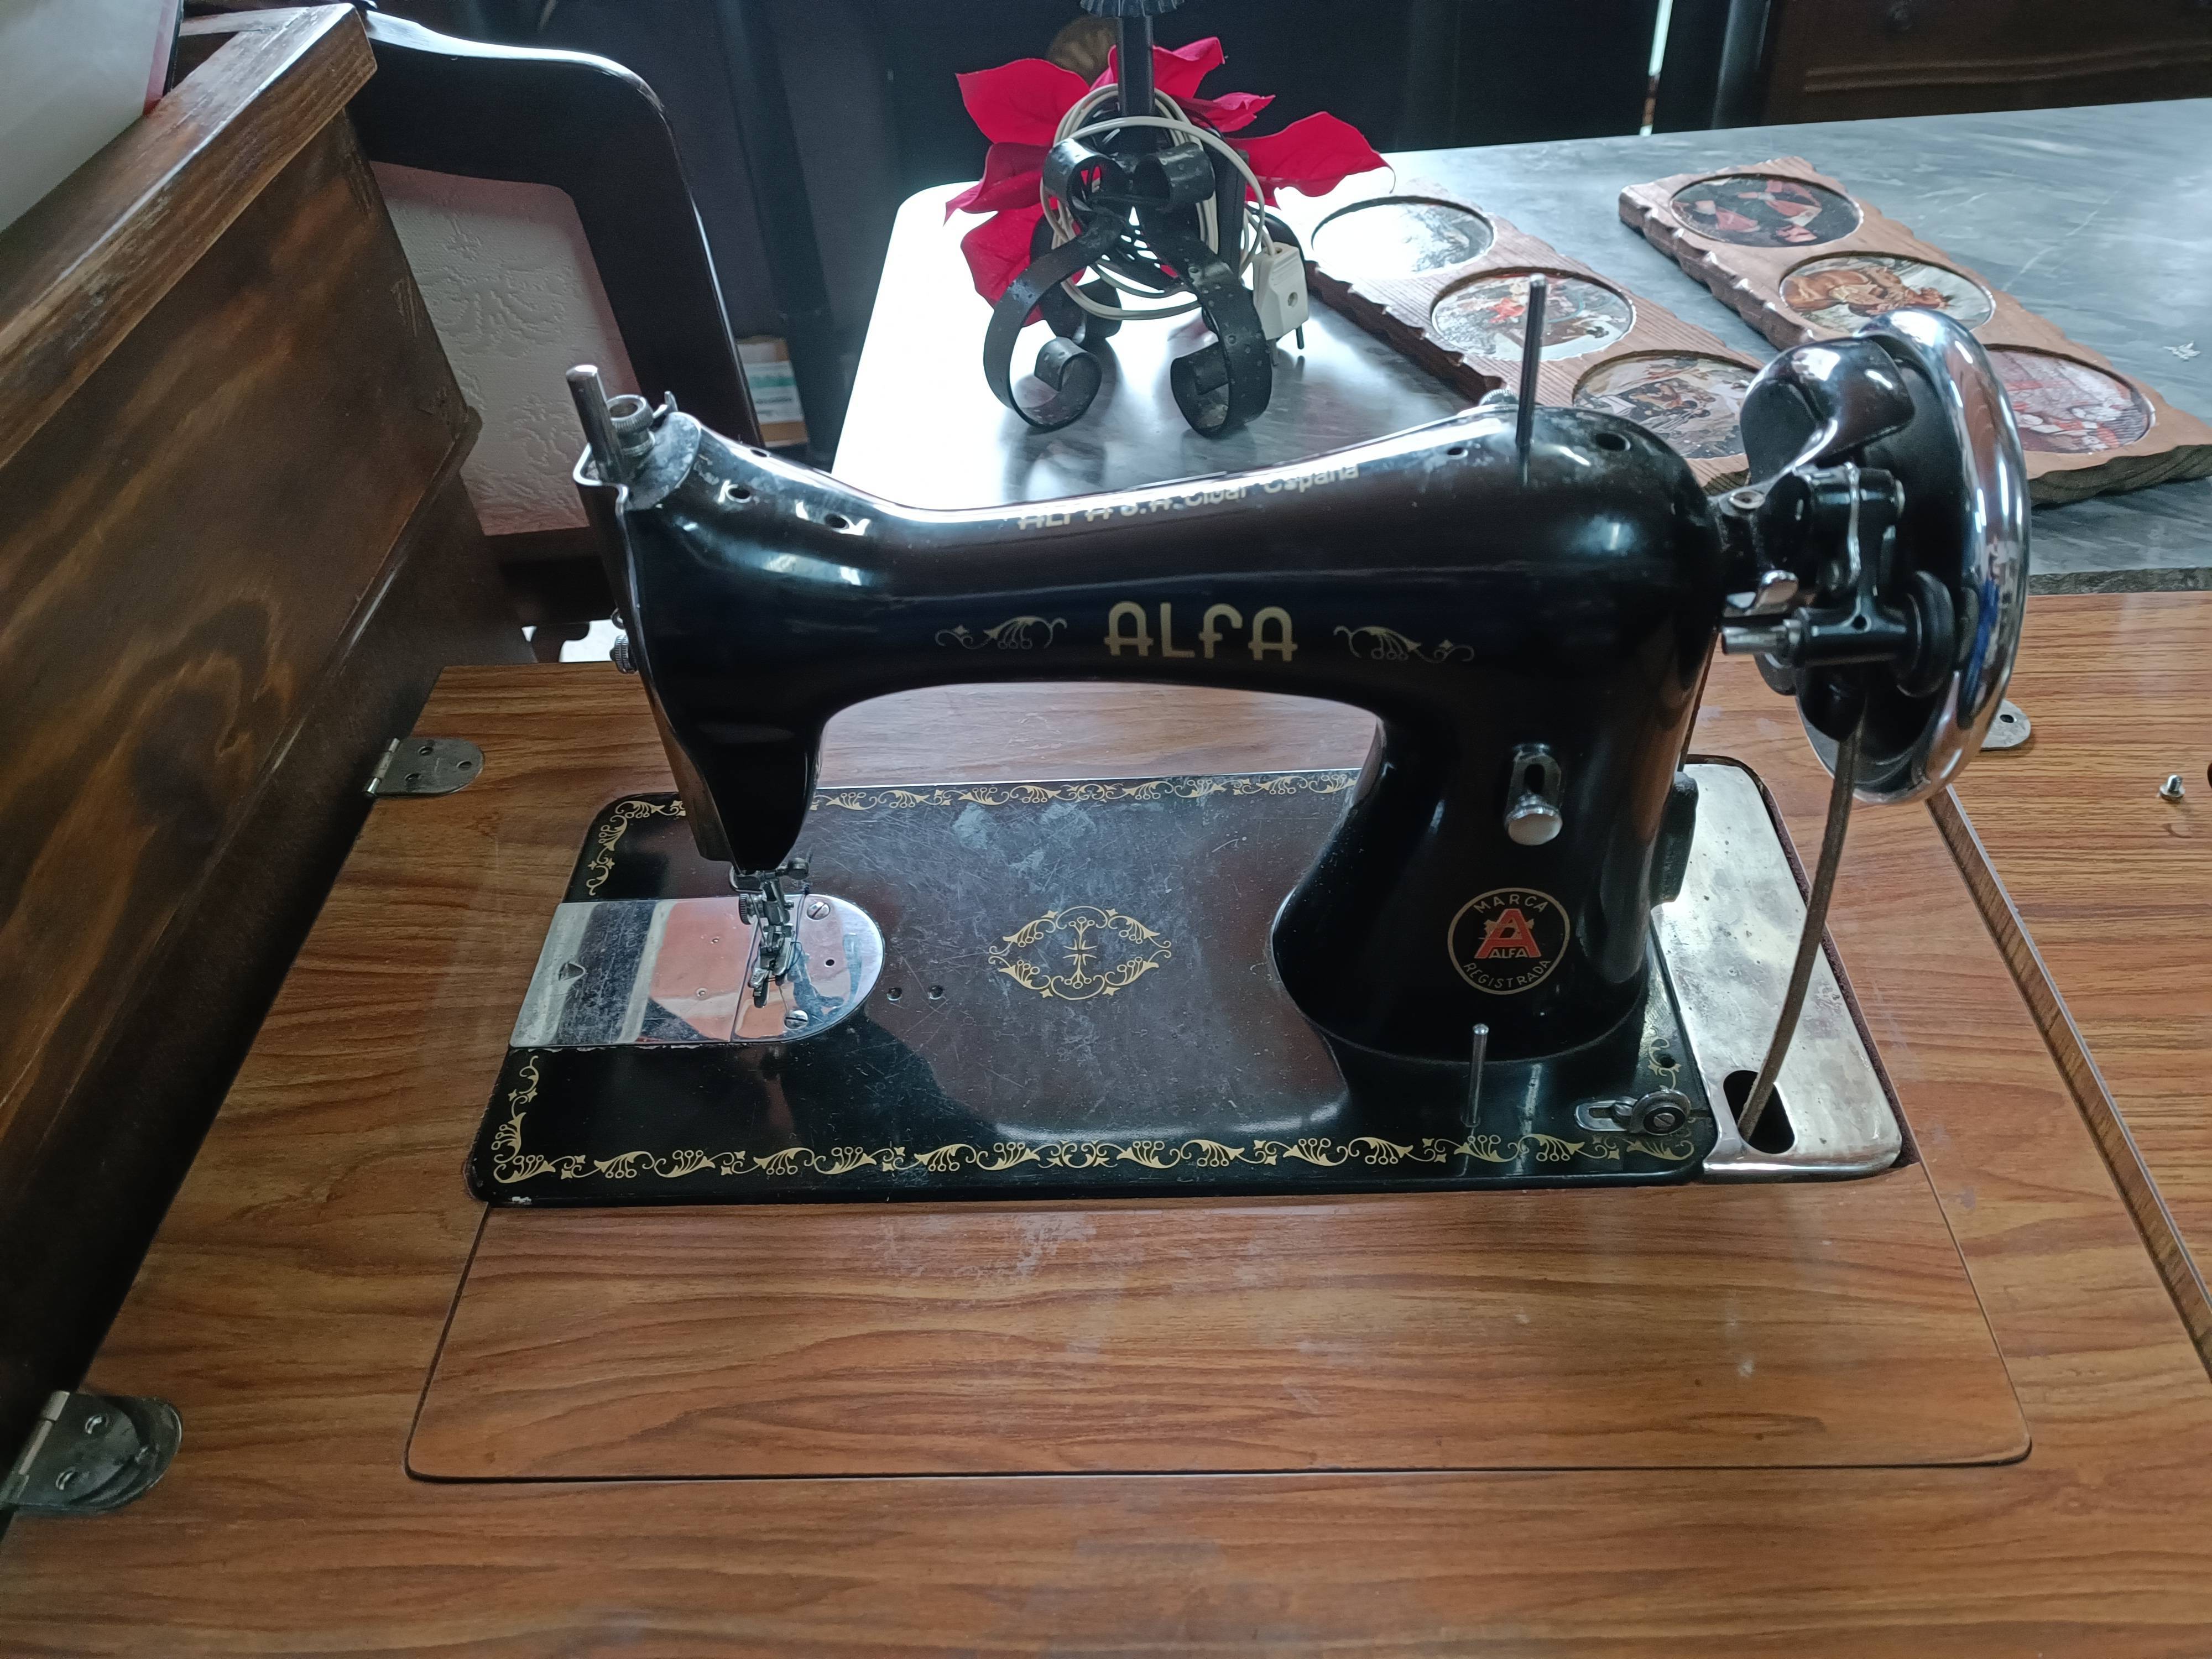 Máquina de coser antigua, Alfa a pedal de segunda mano por 220 EUR en  Marbella en WALLAPOP